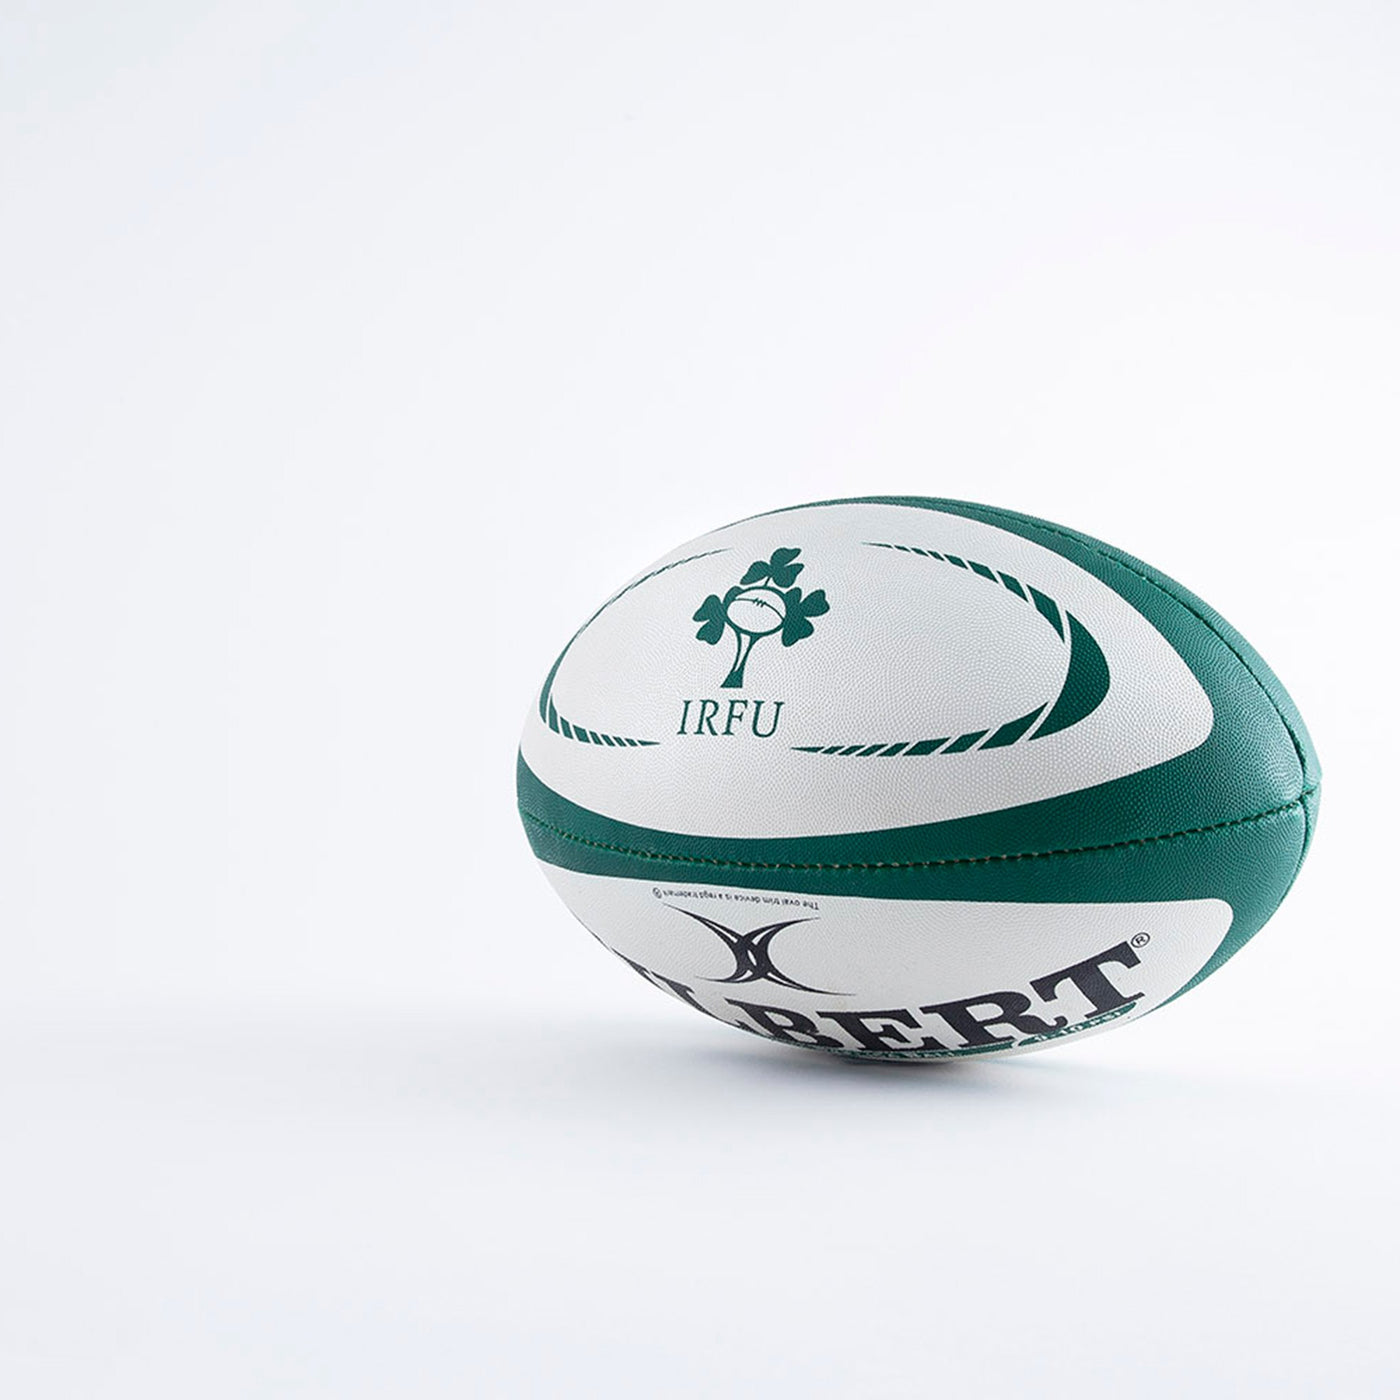 Ballon de Rugby Réplique Irlande Taille 4